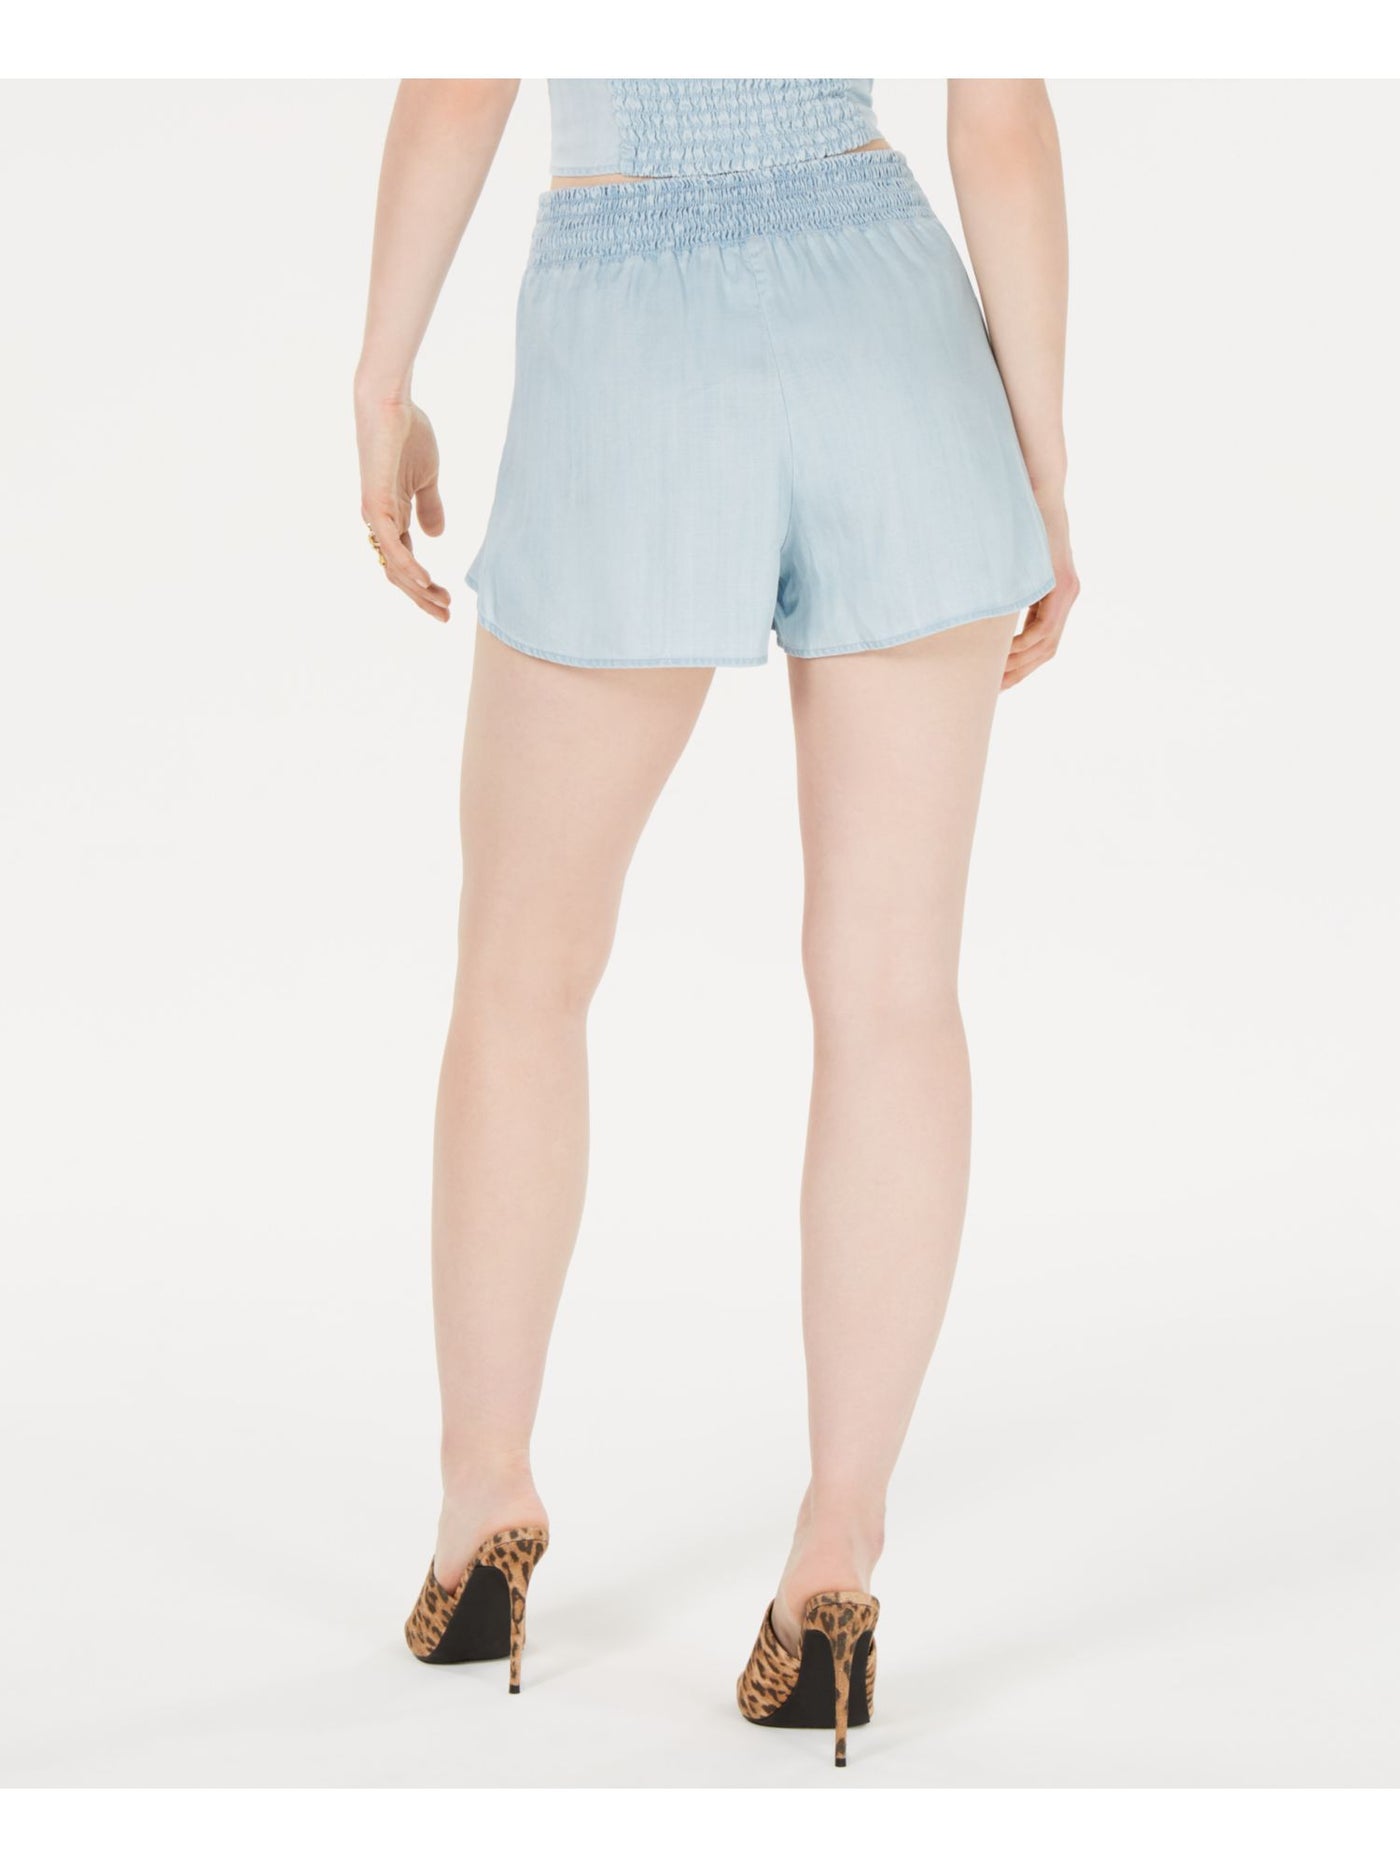 GUESS Womens Light Blue Shorts XL